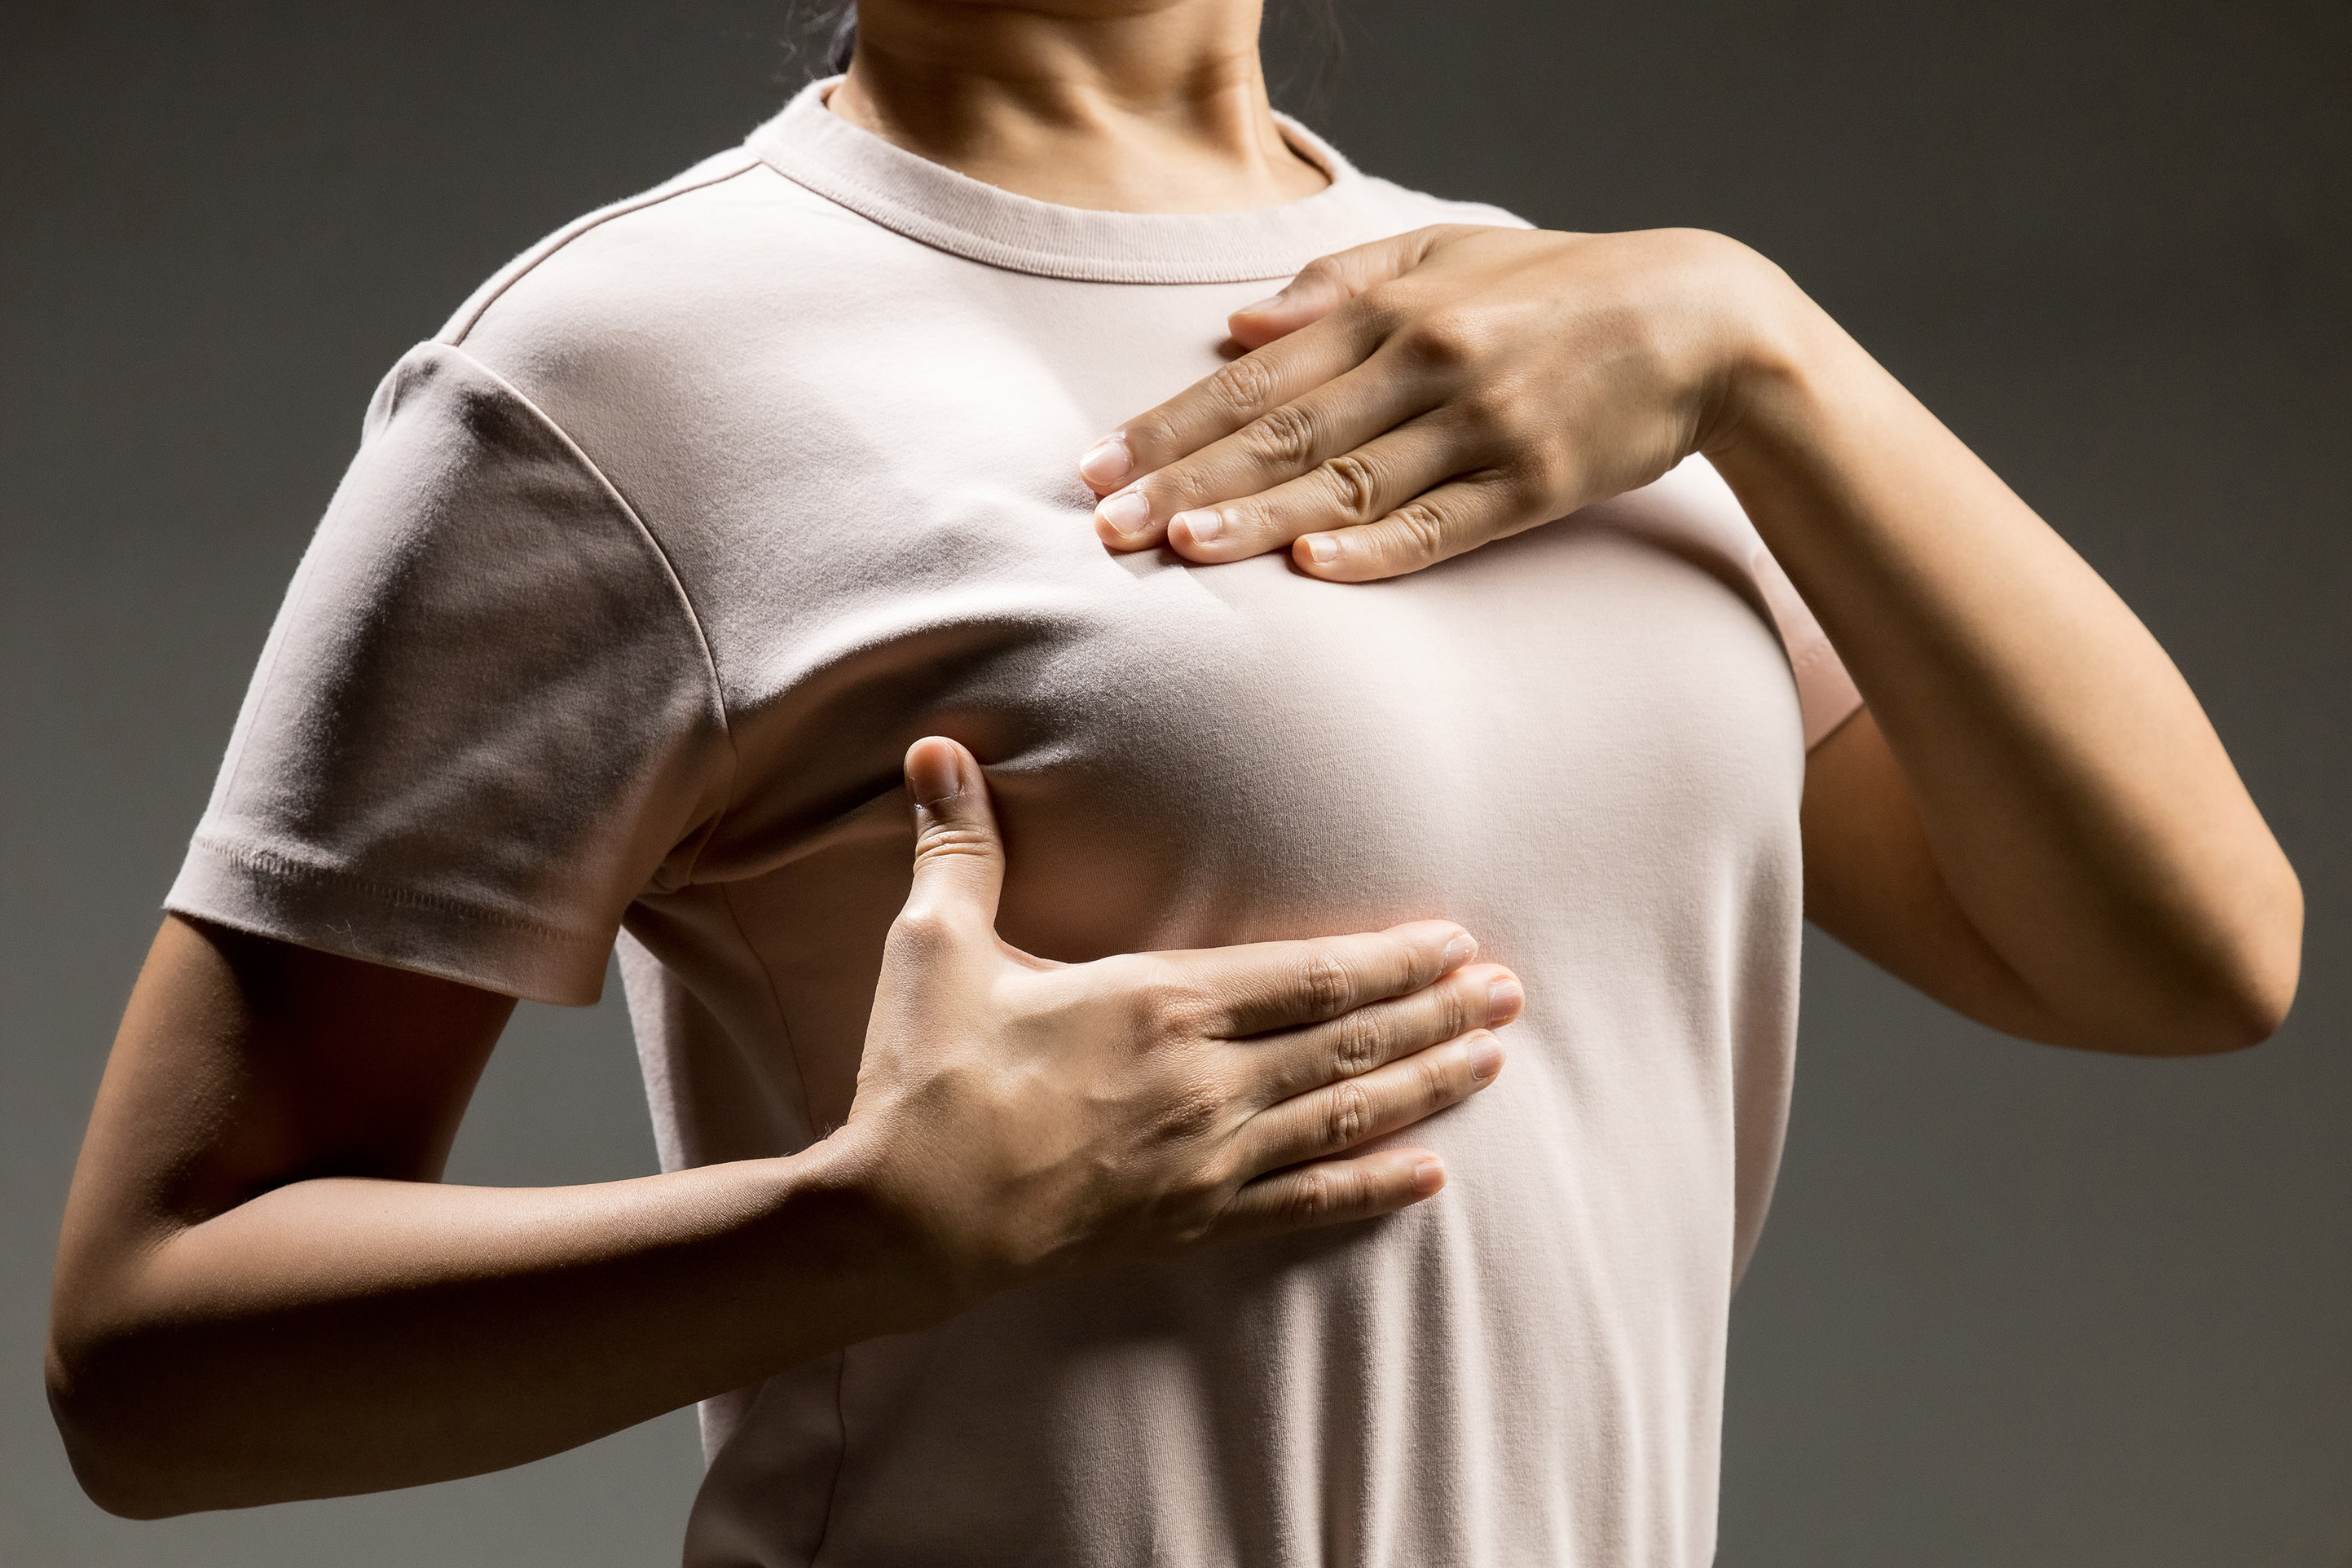 Des applications mobiles permettent aujourd'hui d'obtenir des conseils et des guides pour pratiquer l'autopalpation mammaire. © PhonlamaiPhoto, Getty Images